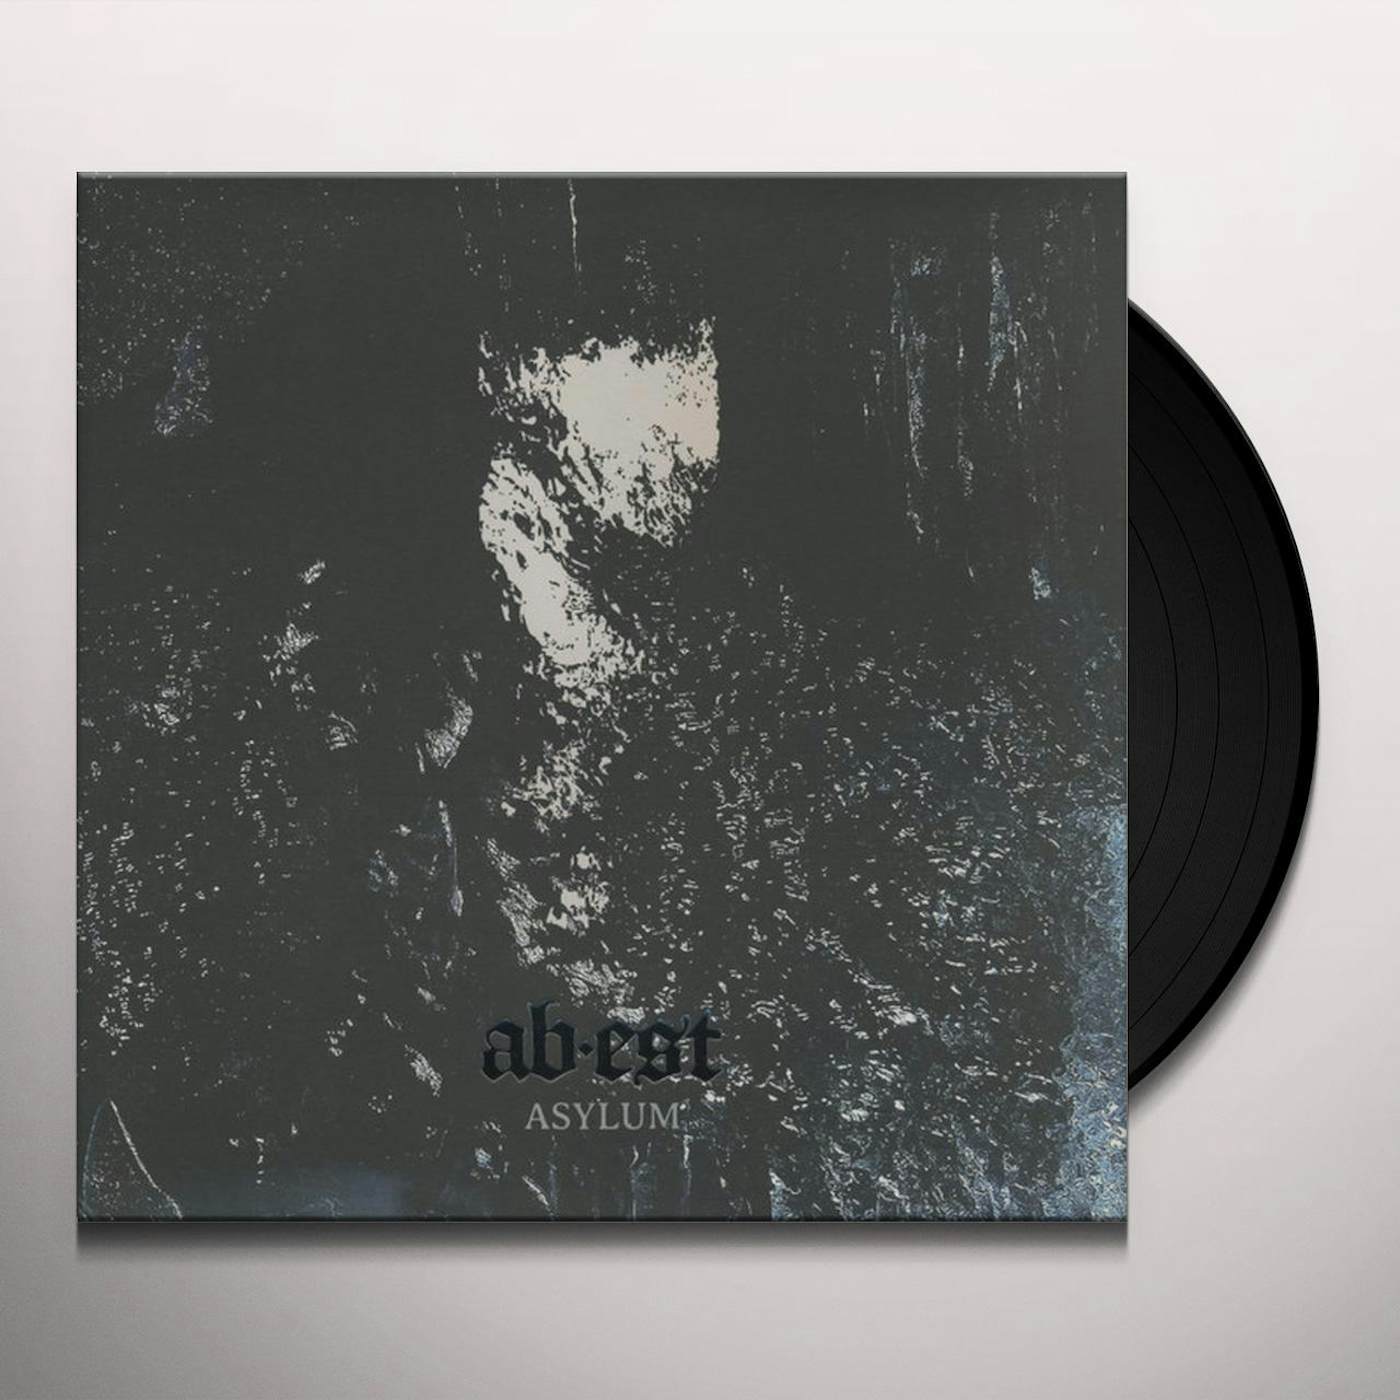 Abest Asylum Vinyl Record